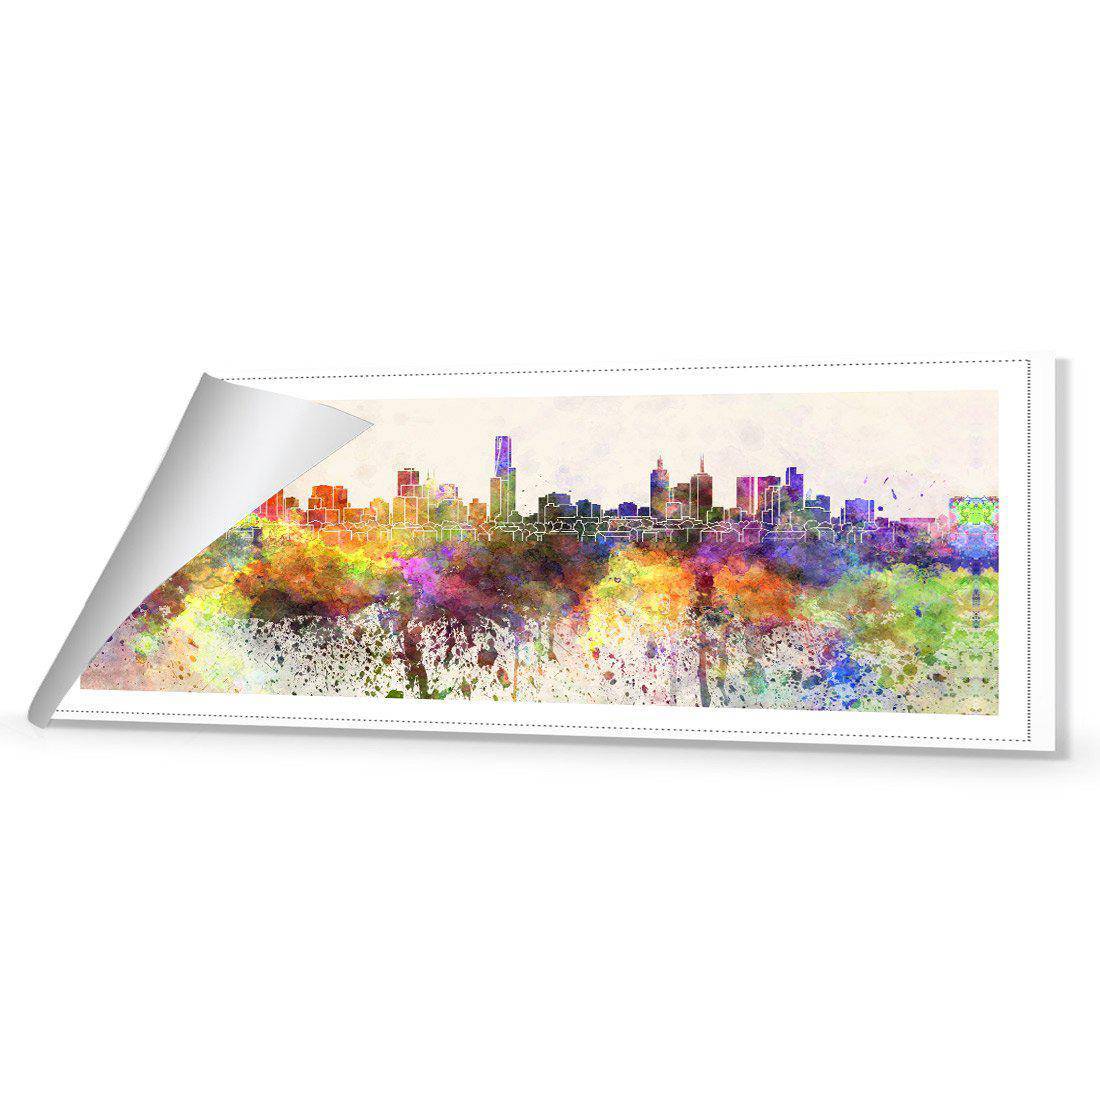 Melbourne Skyline Watercolour Canvas Art-Canvas-Wall Art Designs-60x20cm-Rolled Canvas-Wall Art Designs